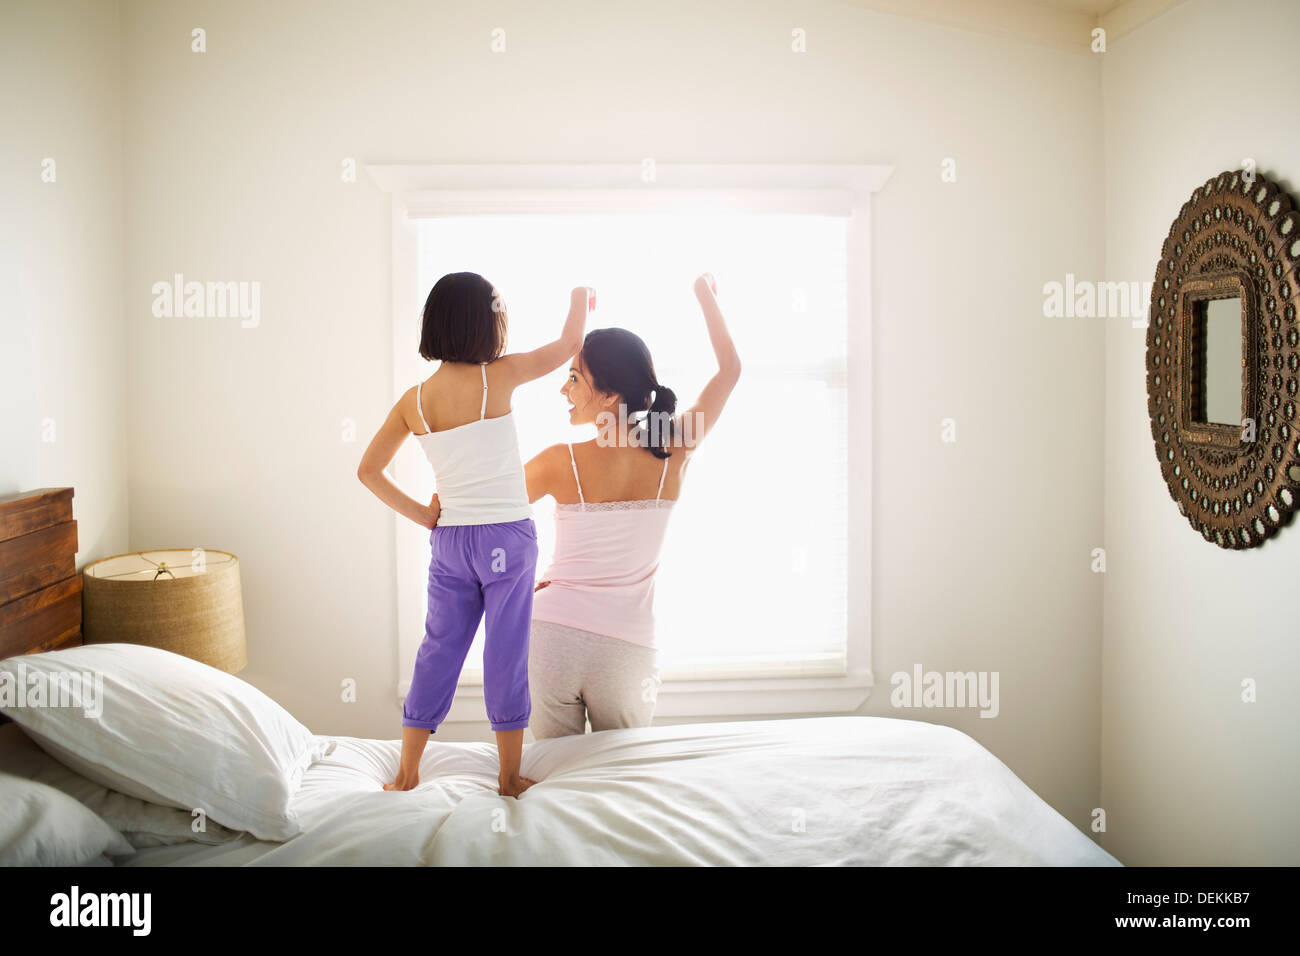 Mère et fille jouer on bed Banque D'Images